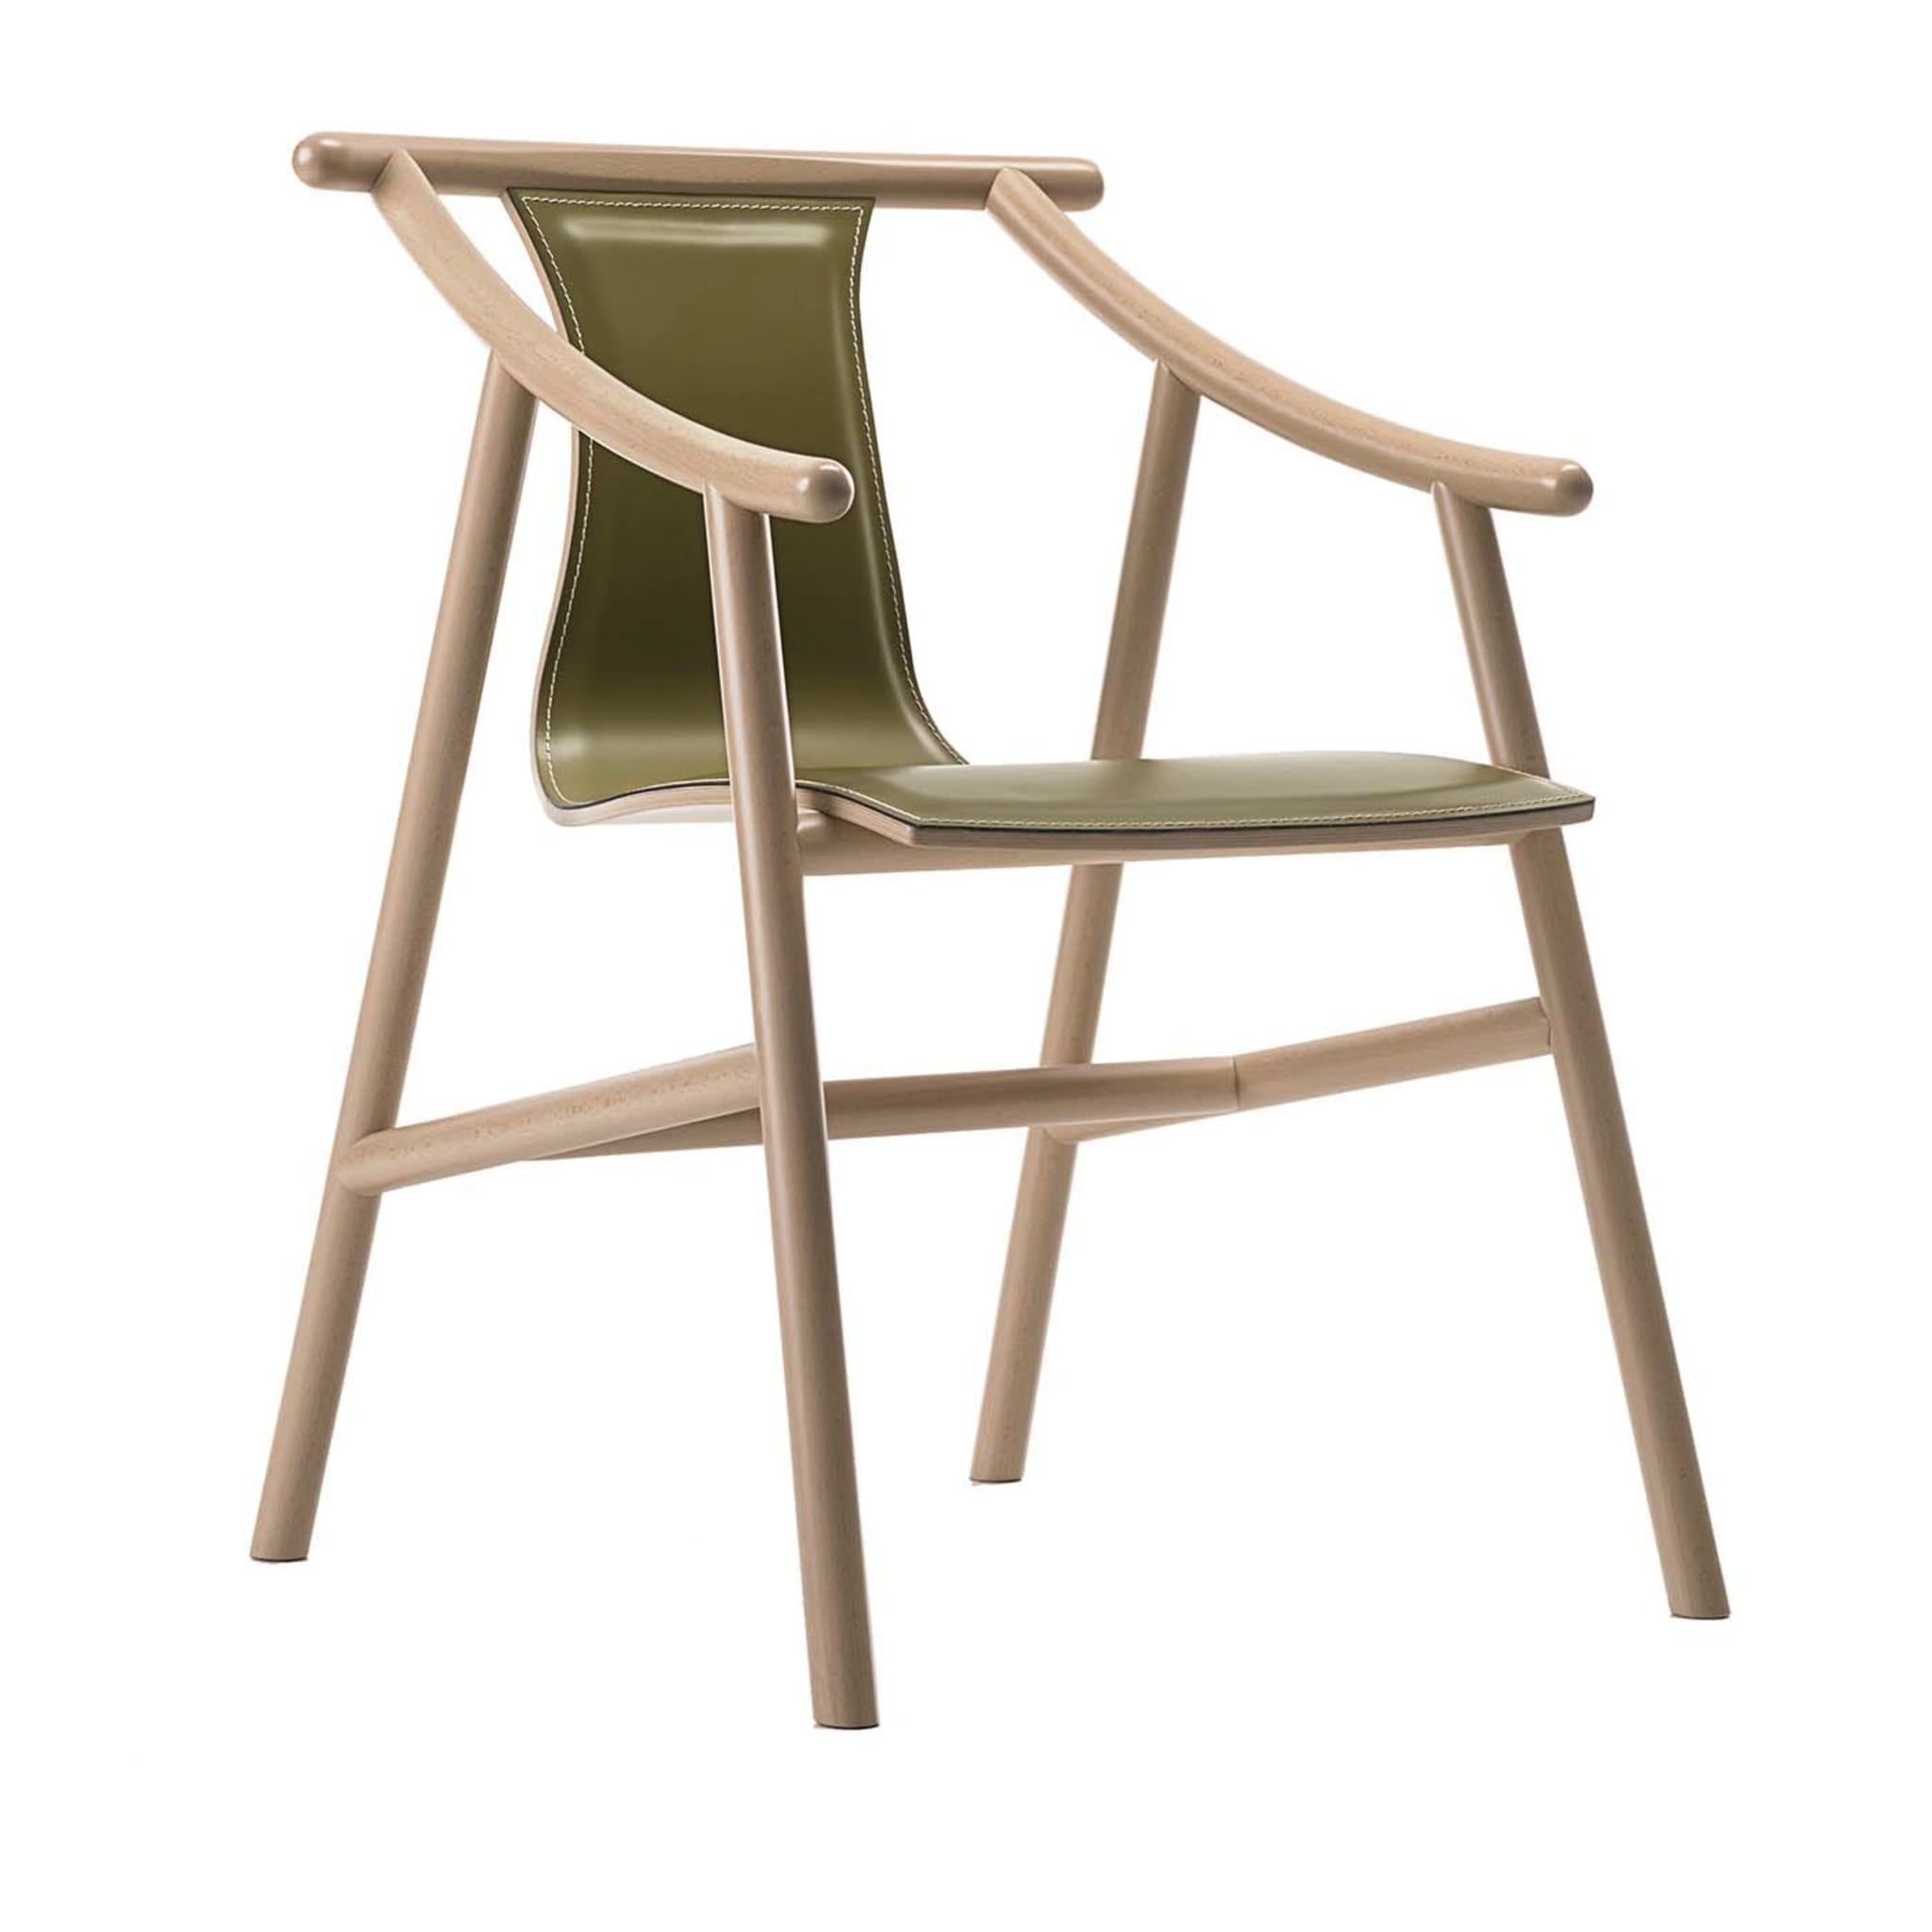 Magistretti 03 01 Green Chair by Vico Magistretti - Vue principale